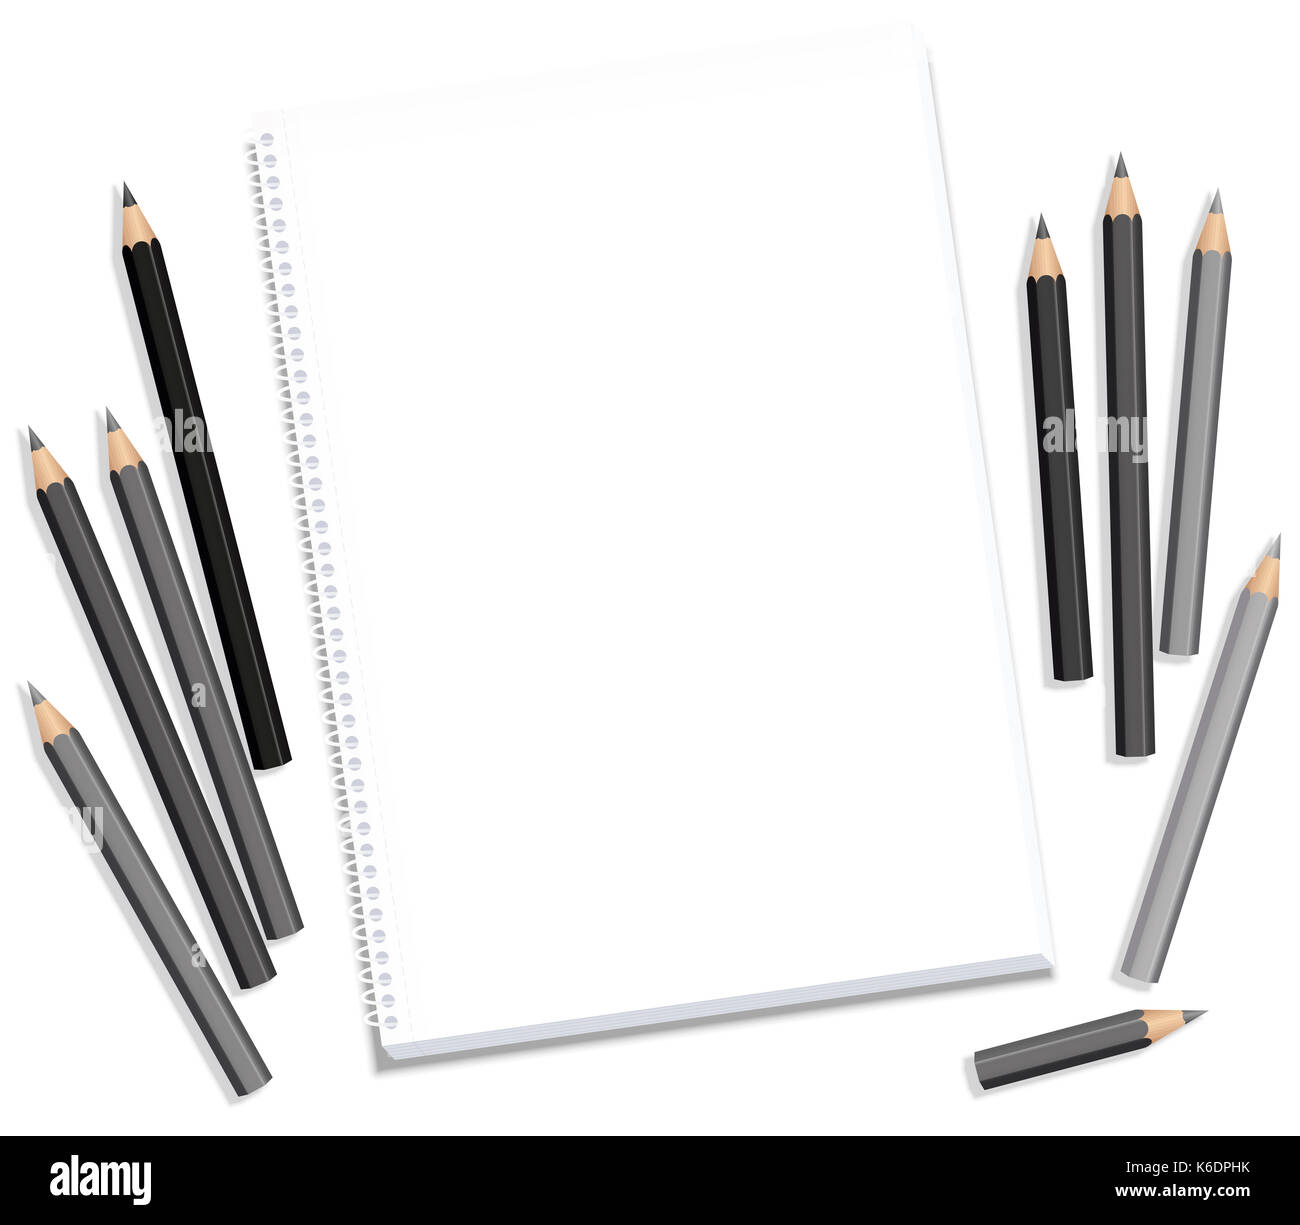 Zeichnung Block und grau Bleistifte - leeres Papier pad Sehnsucht nach künstlerischen Schaffens - Abbildung auf weißem Hintergrund. Stockfoto